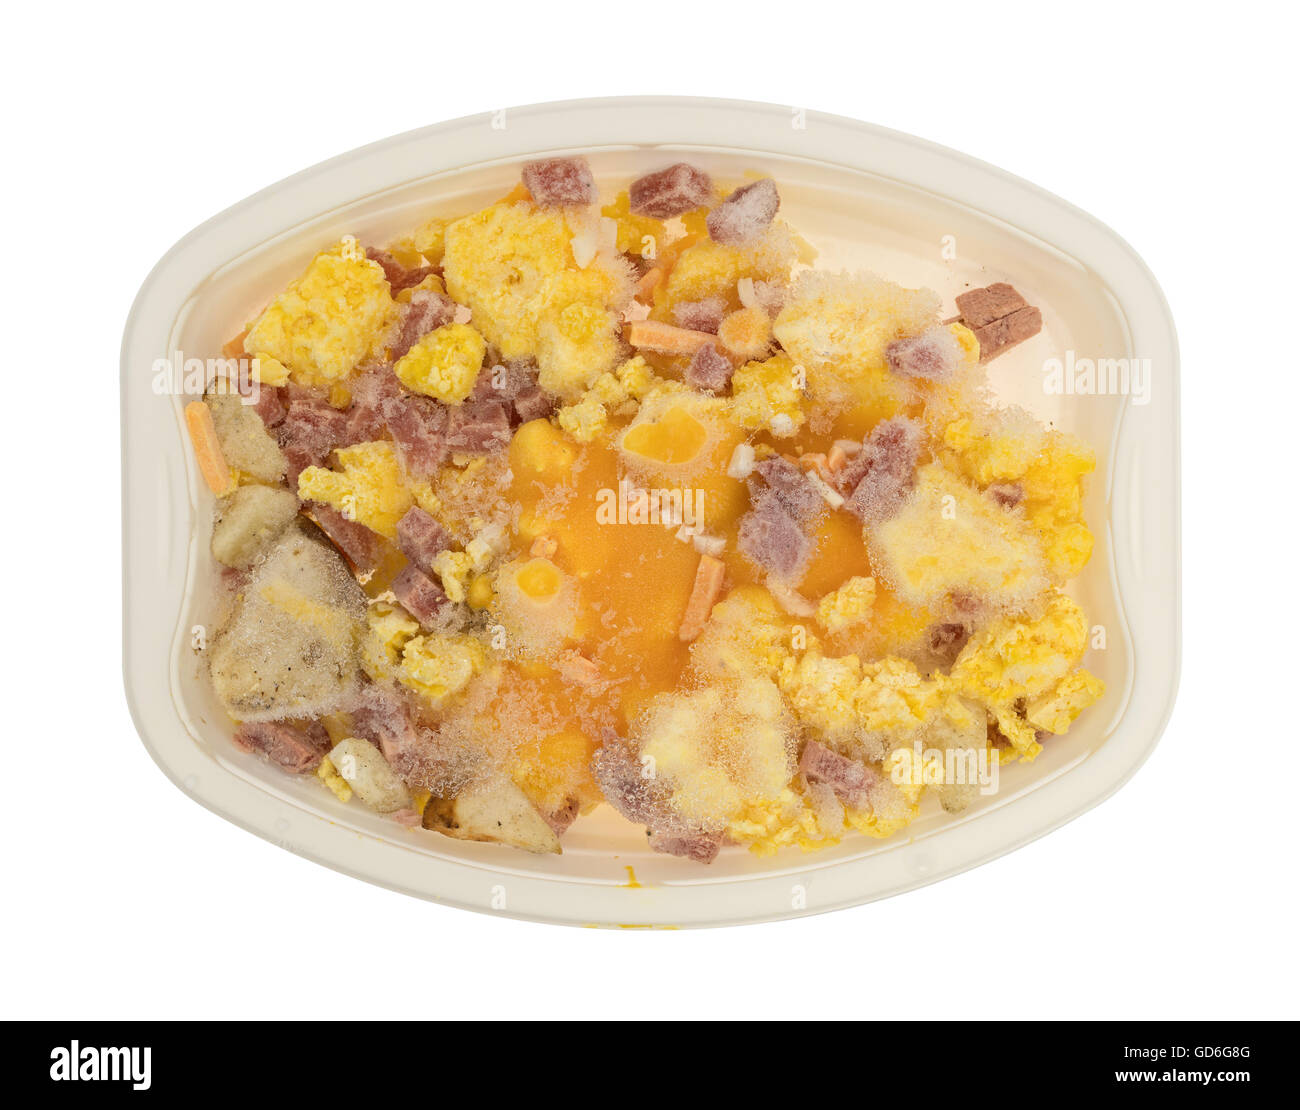 Dos microondas huevo cocina con dos huevos cocidos Fotografía de stock -  Alamy